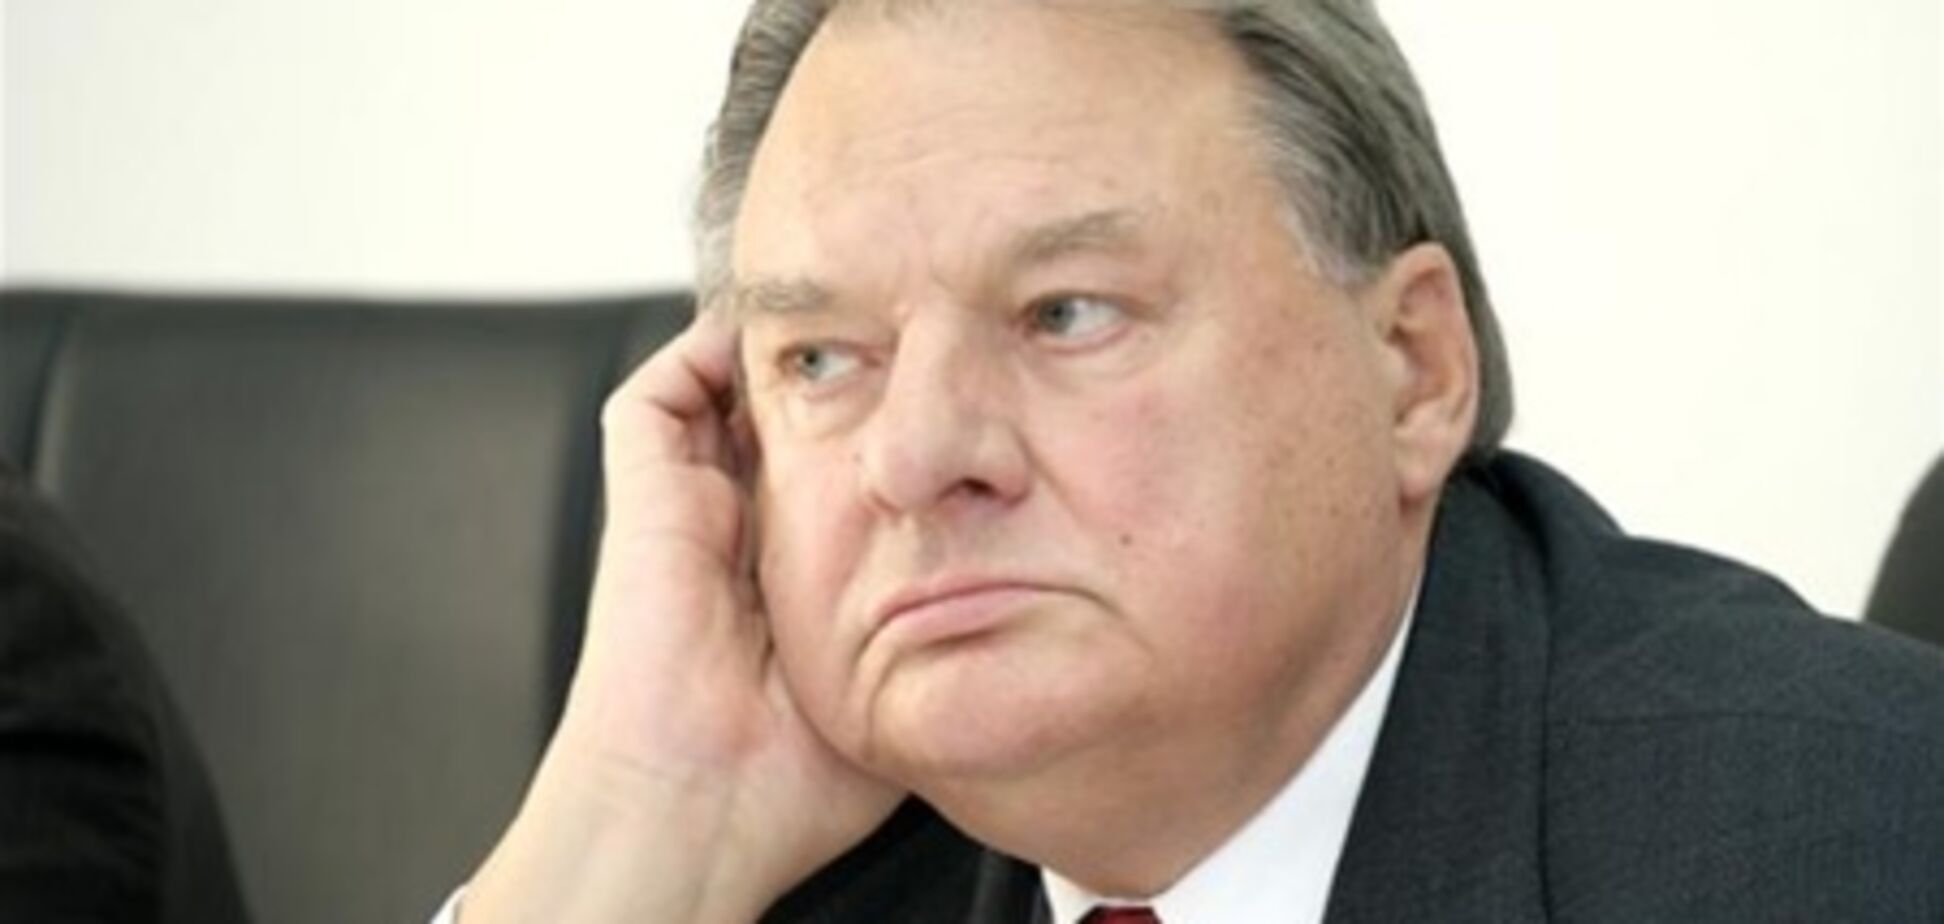 Умер экс-министр иностранных дел Геннадий Удовенко